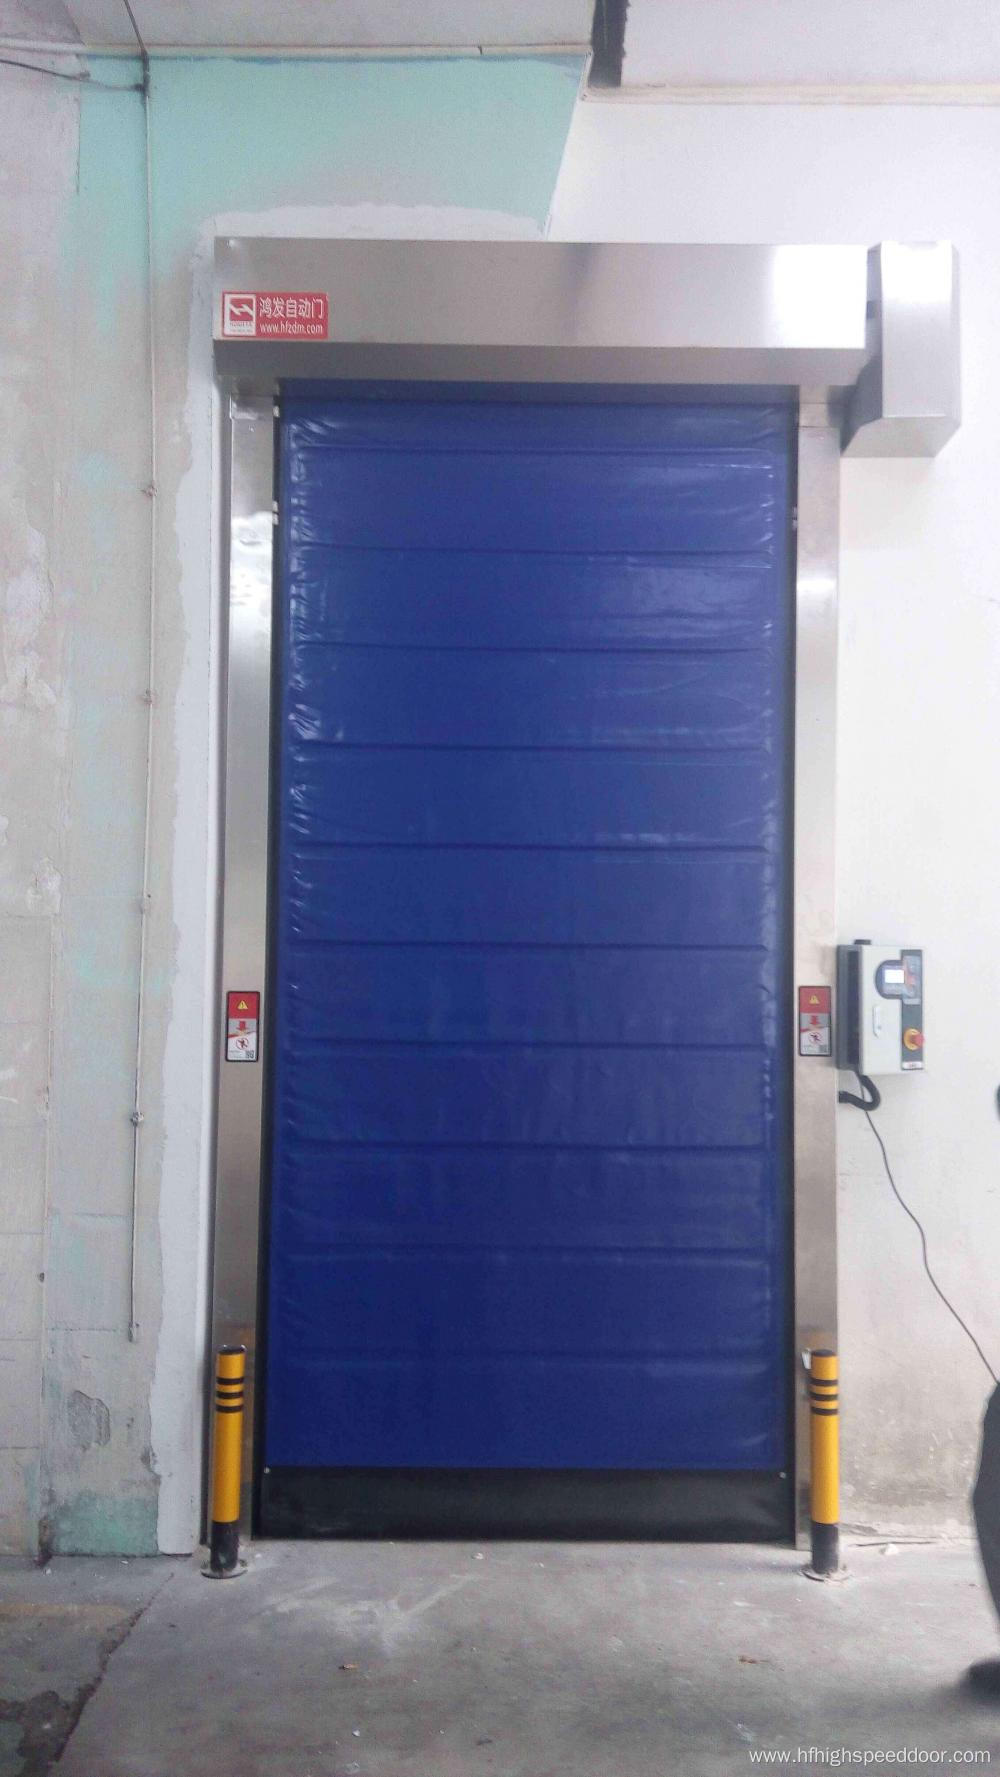 High speed self-repair door for cold room